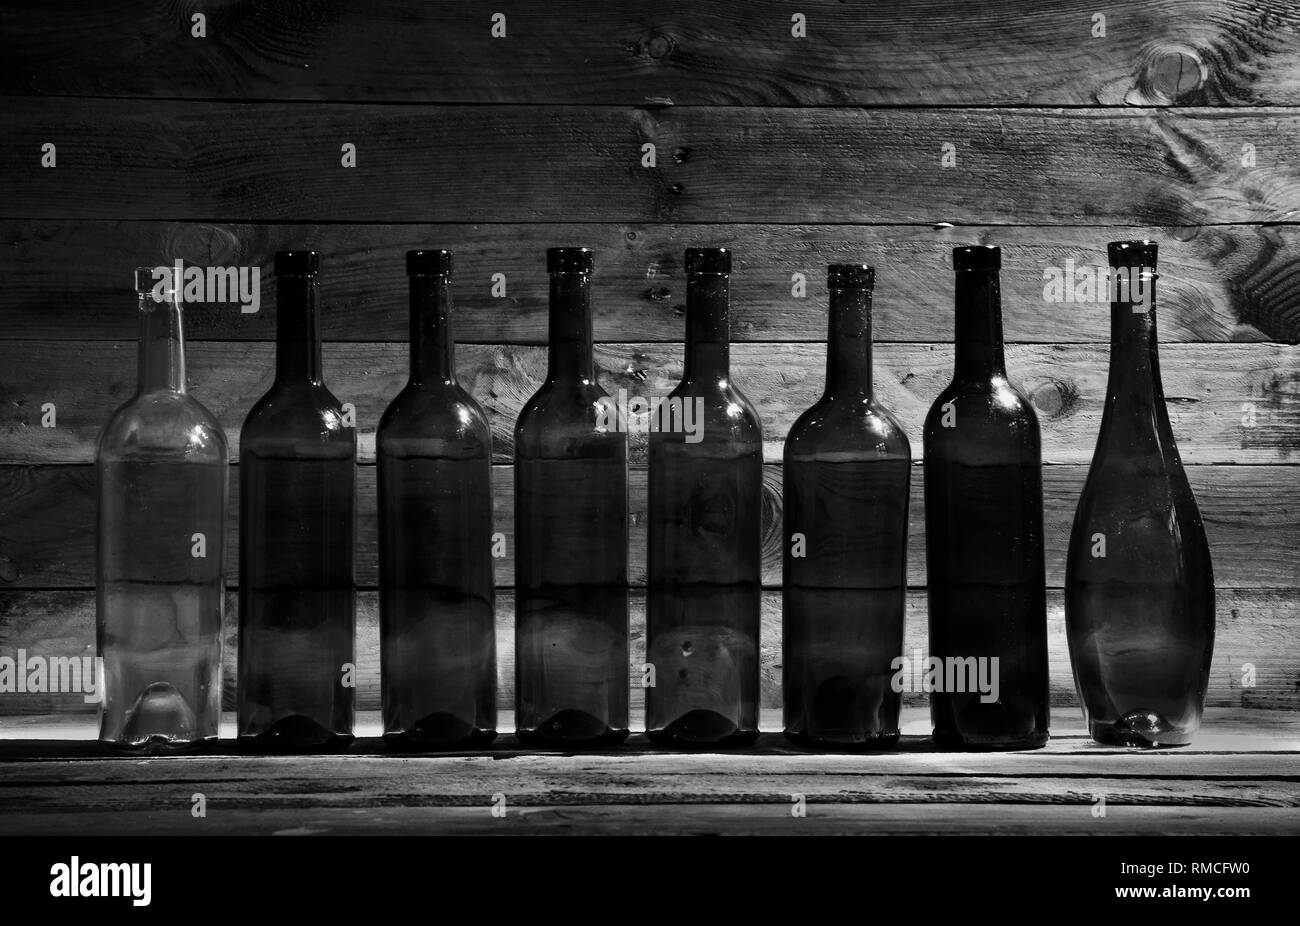 Vieilles bouteilles de vin dans le noir sur une table de bois en noir et blanc. Banque D'Images